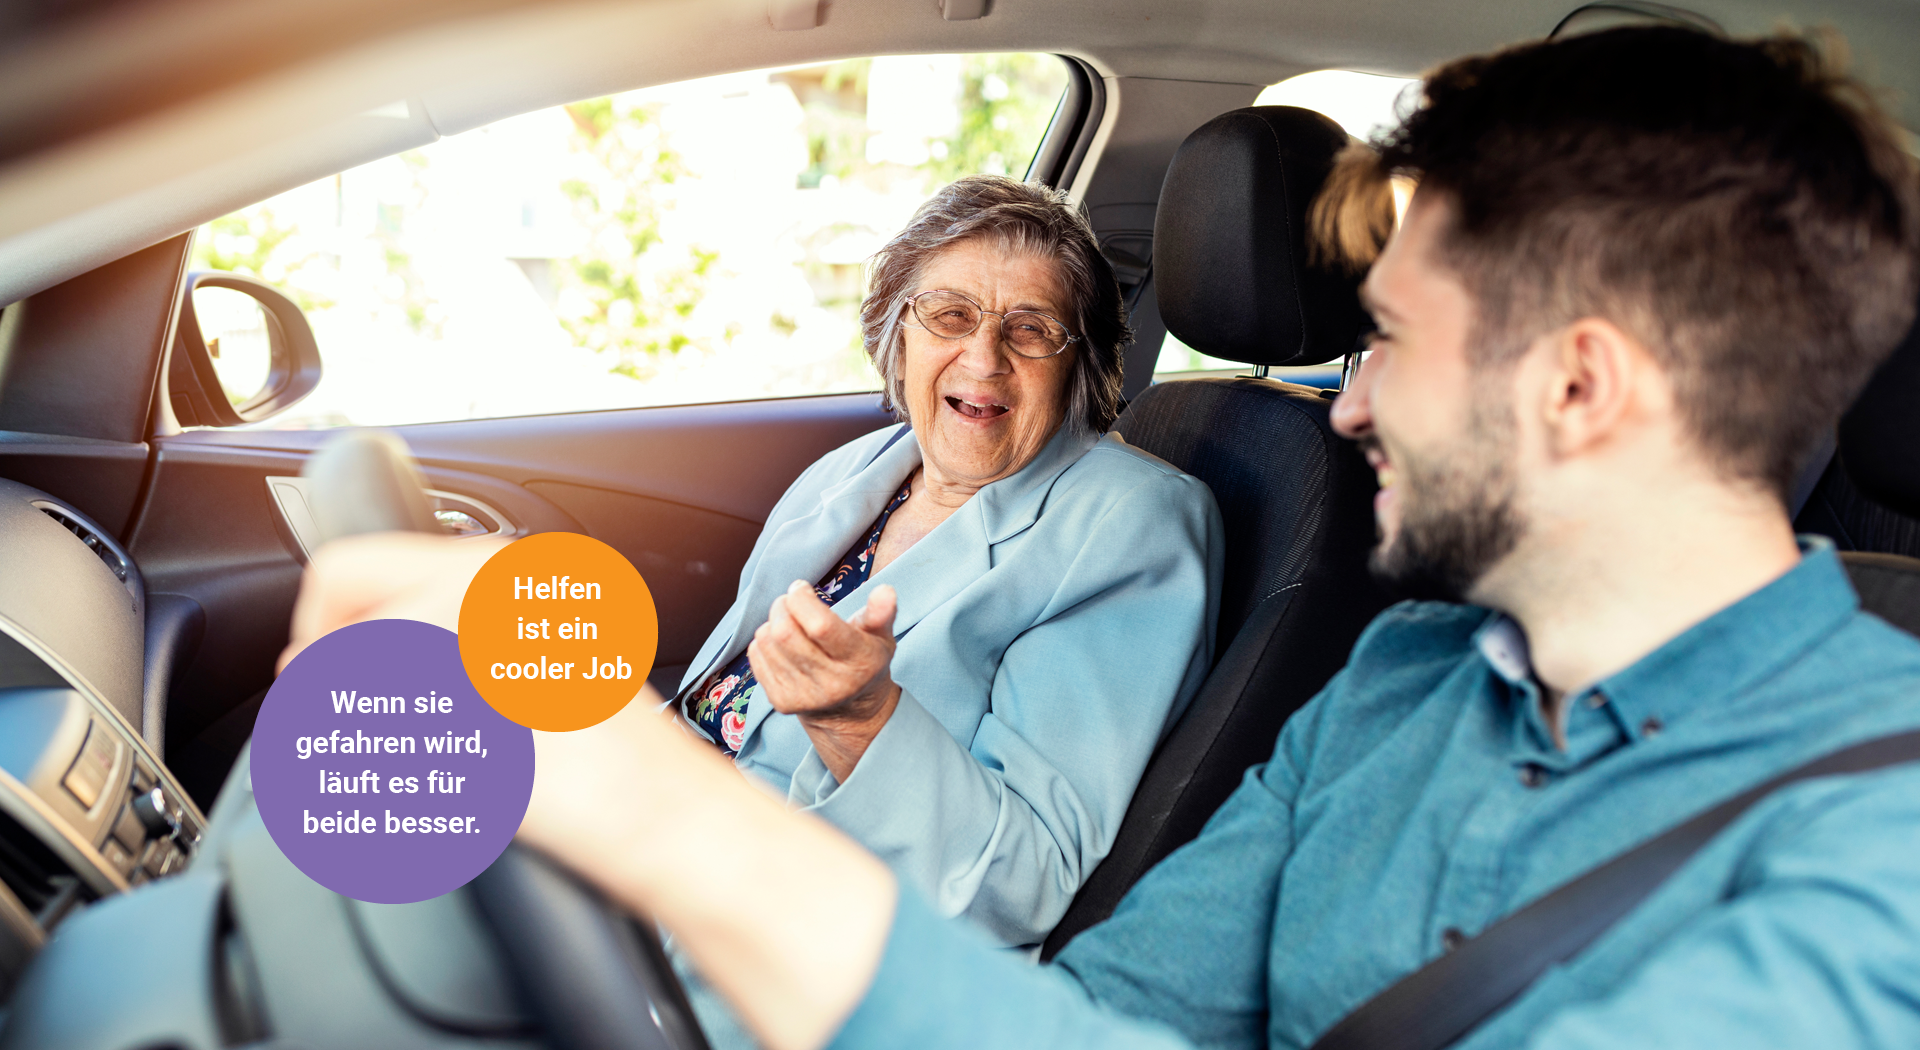 Ein junger Mann am Steuer eines Autos lacht gemeinsam mit einer älteren Dame, die auf dem Beifahrersitz sitzt.